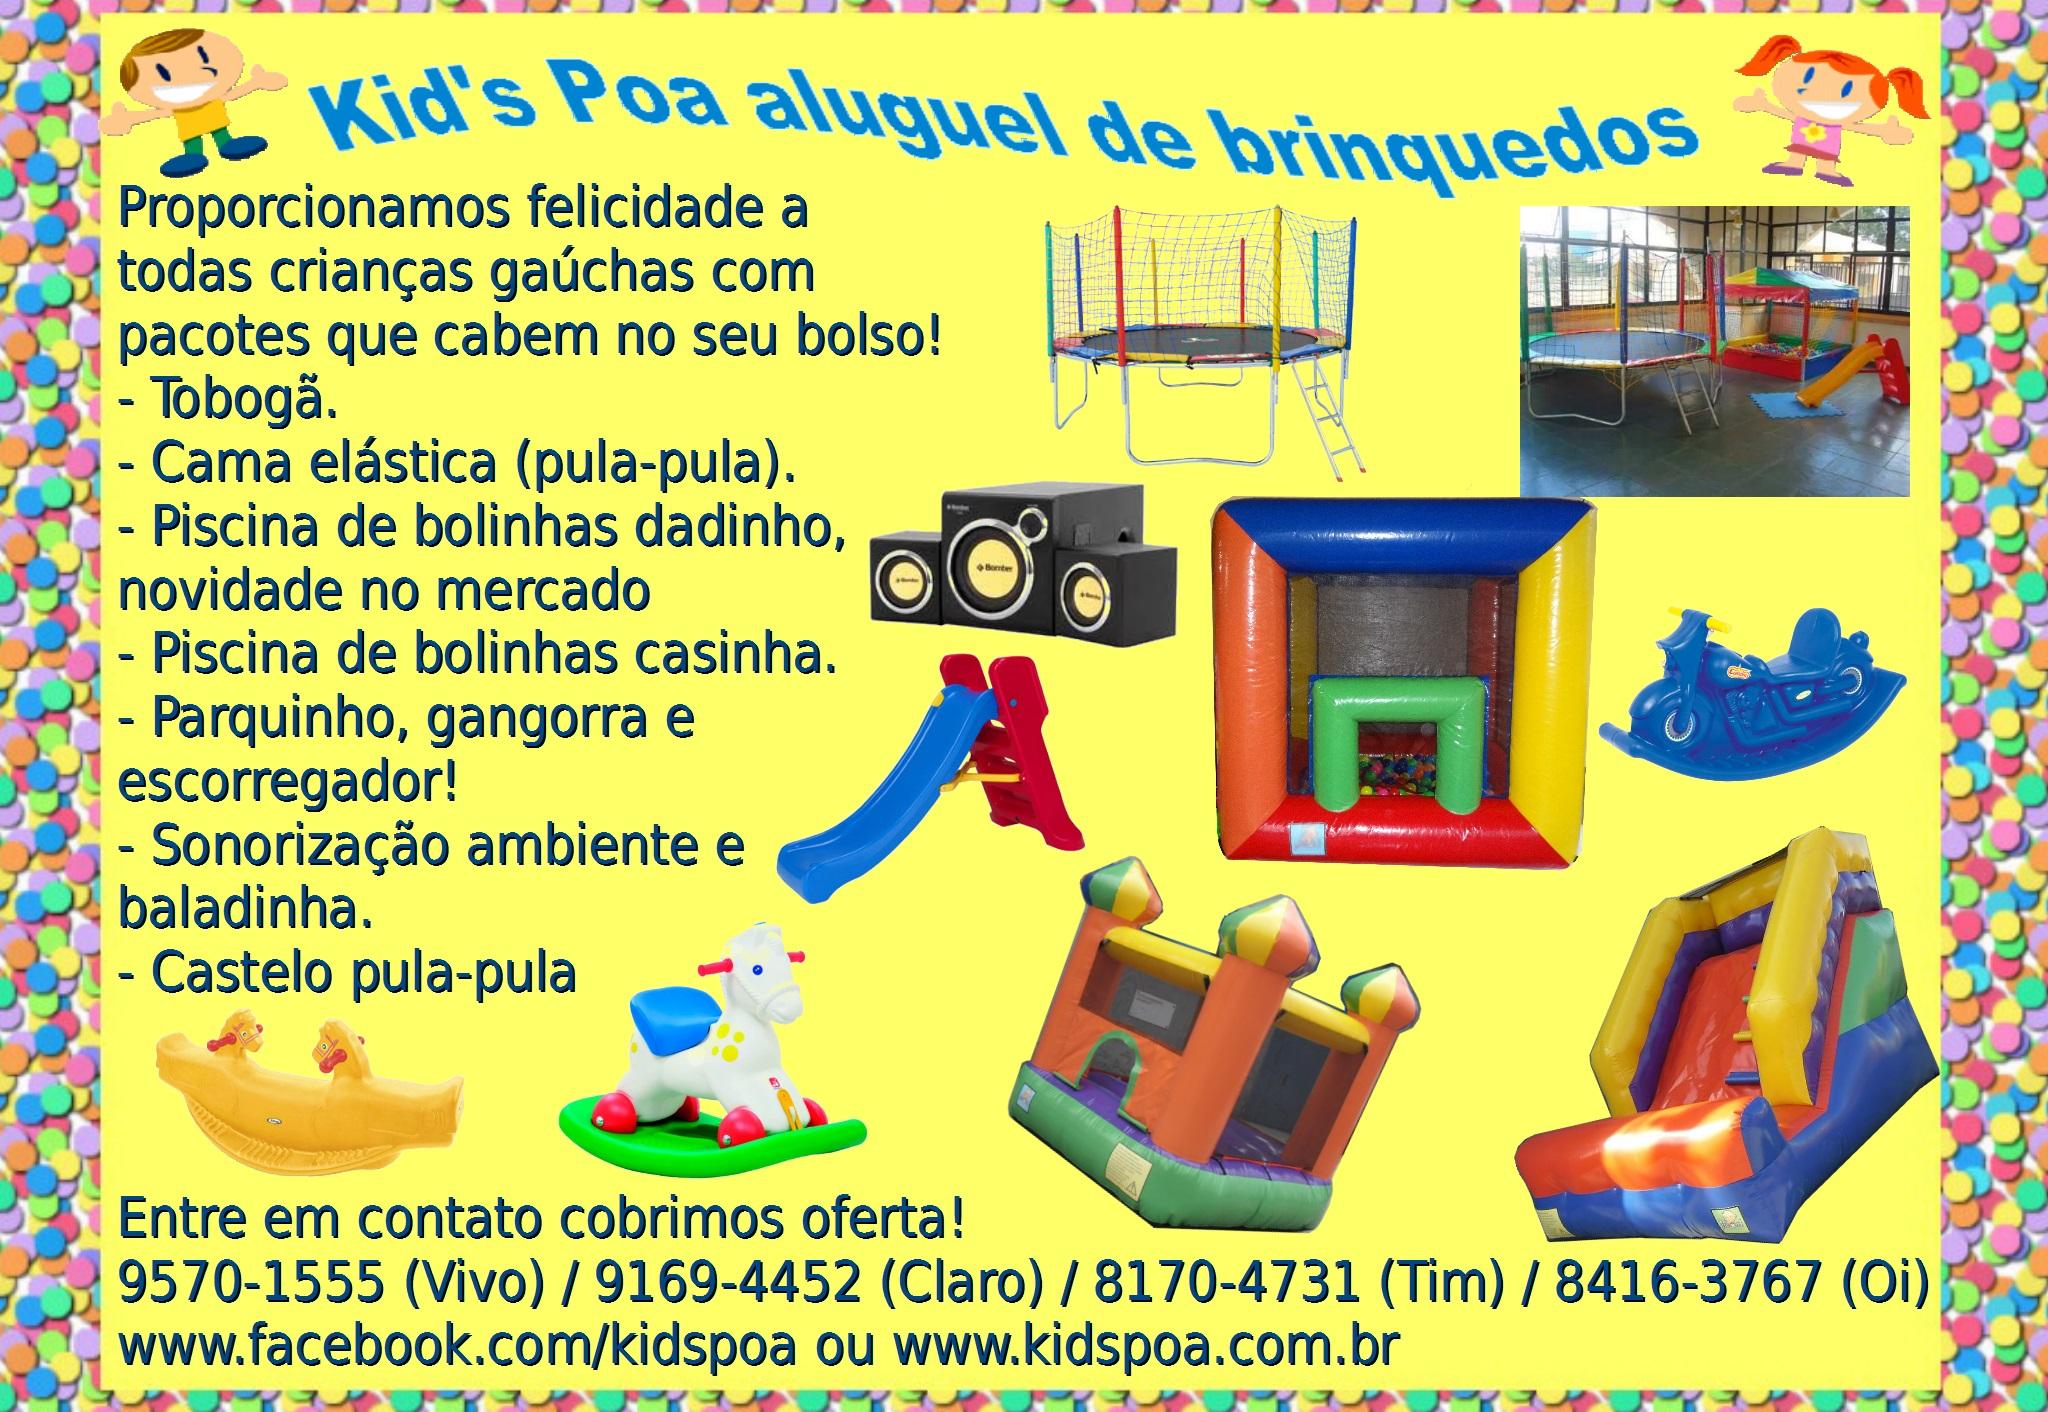 Kidspoa Aluguel de Brinquedos logo